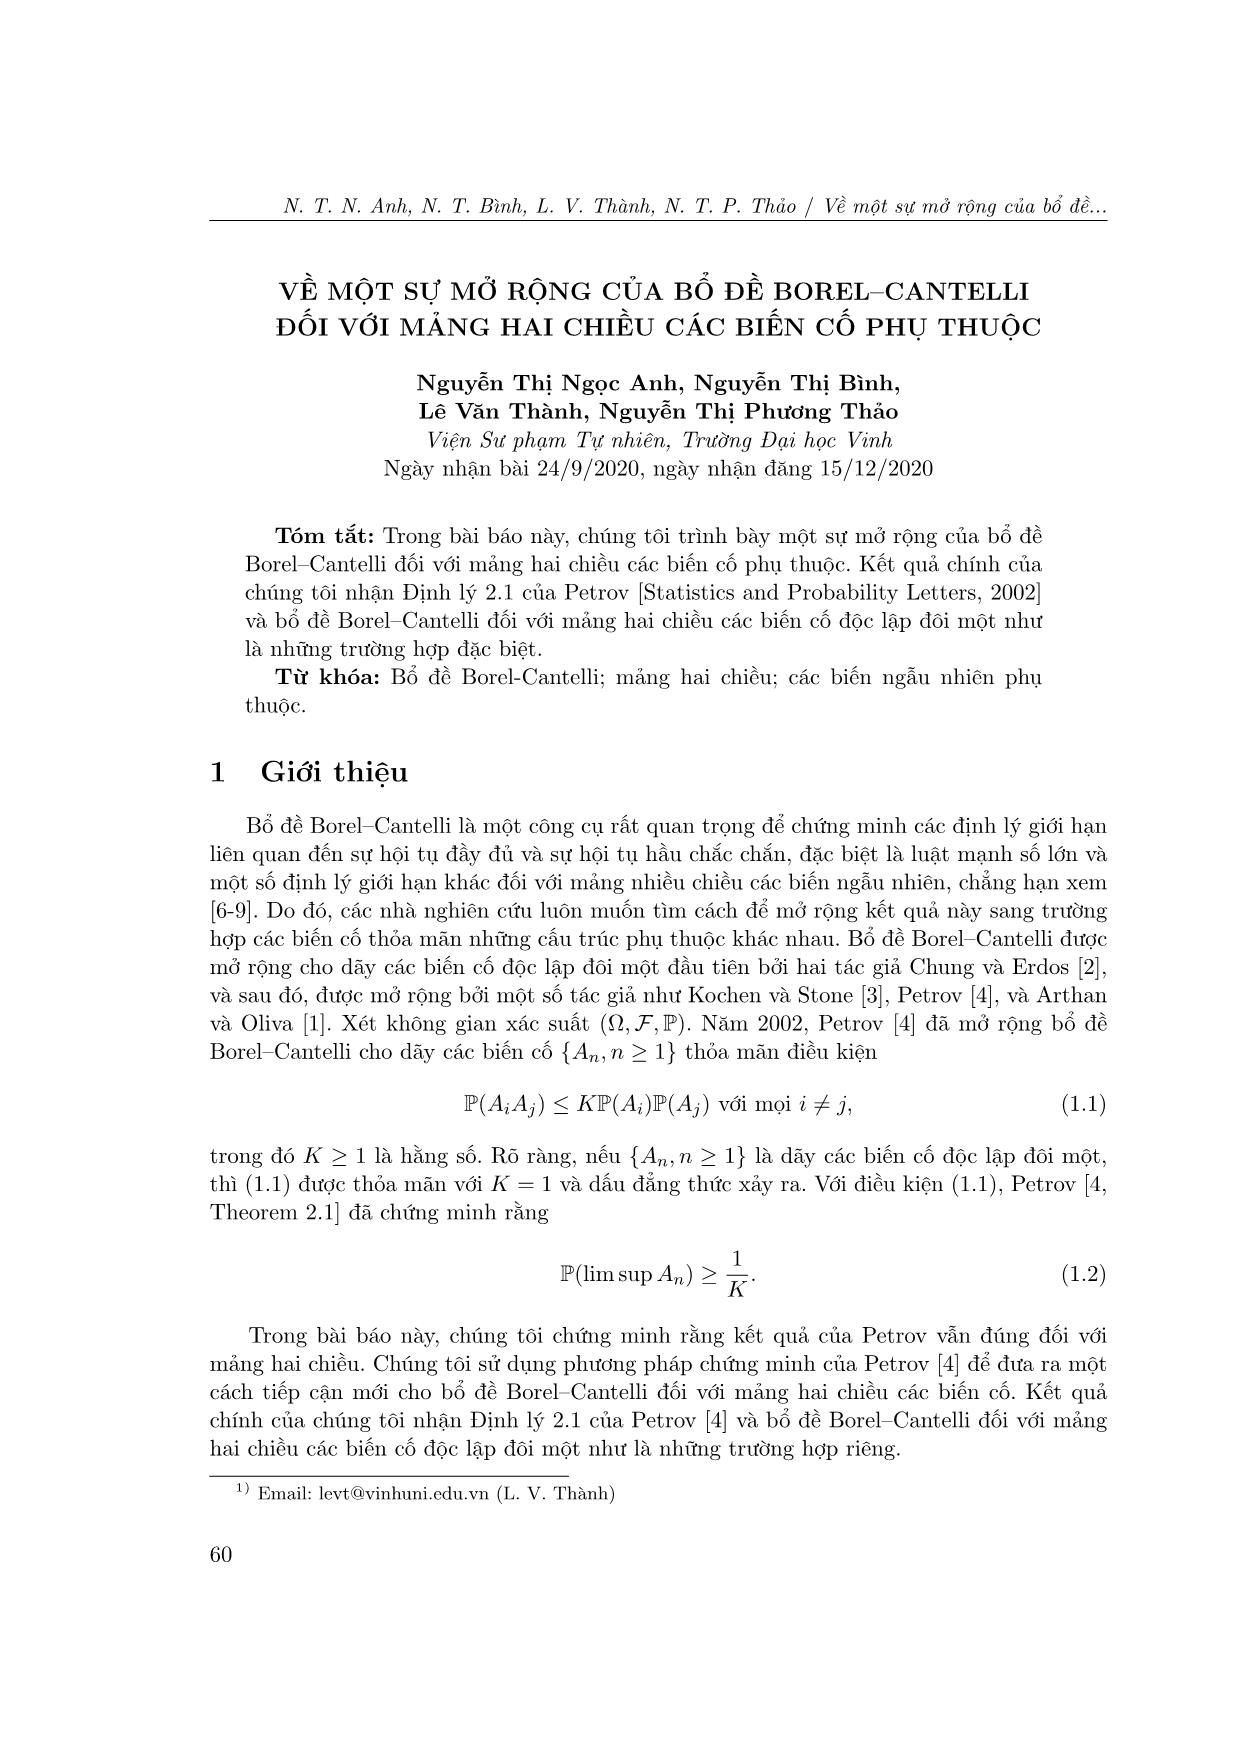 Về một sự mở rộng của bồ đề Borel-Cantelli đối với mảng hai chiều các biến cố phụ thuộc trang 1